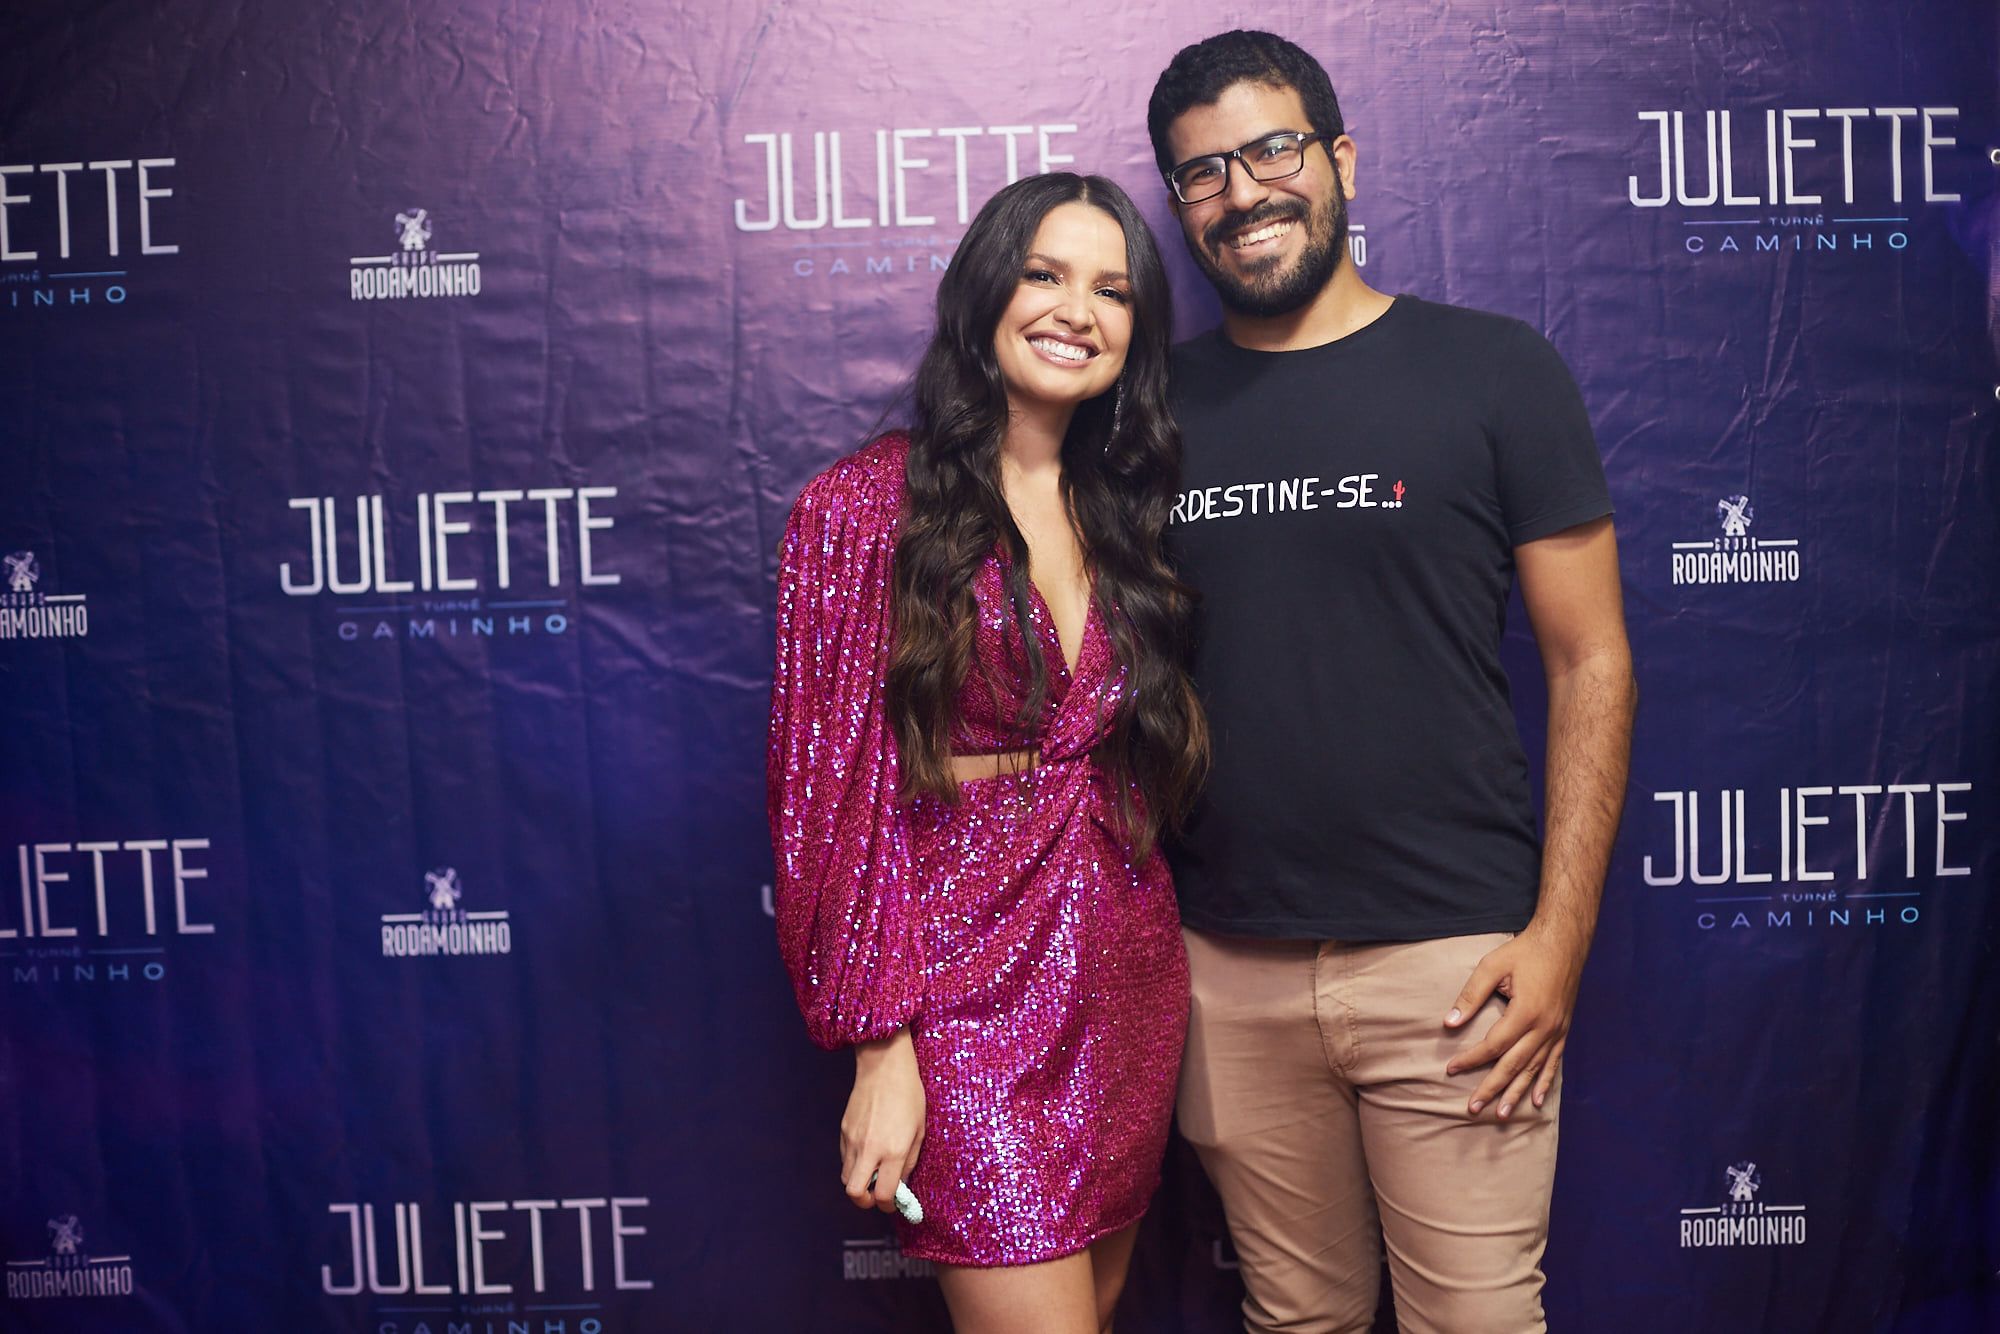 Ittalo with Brazilian pop star Juliette. 